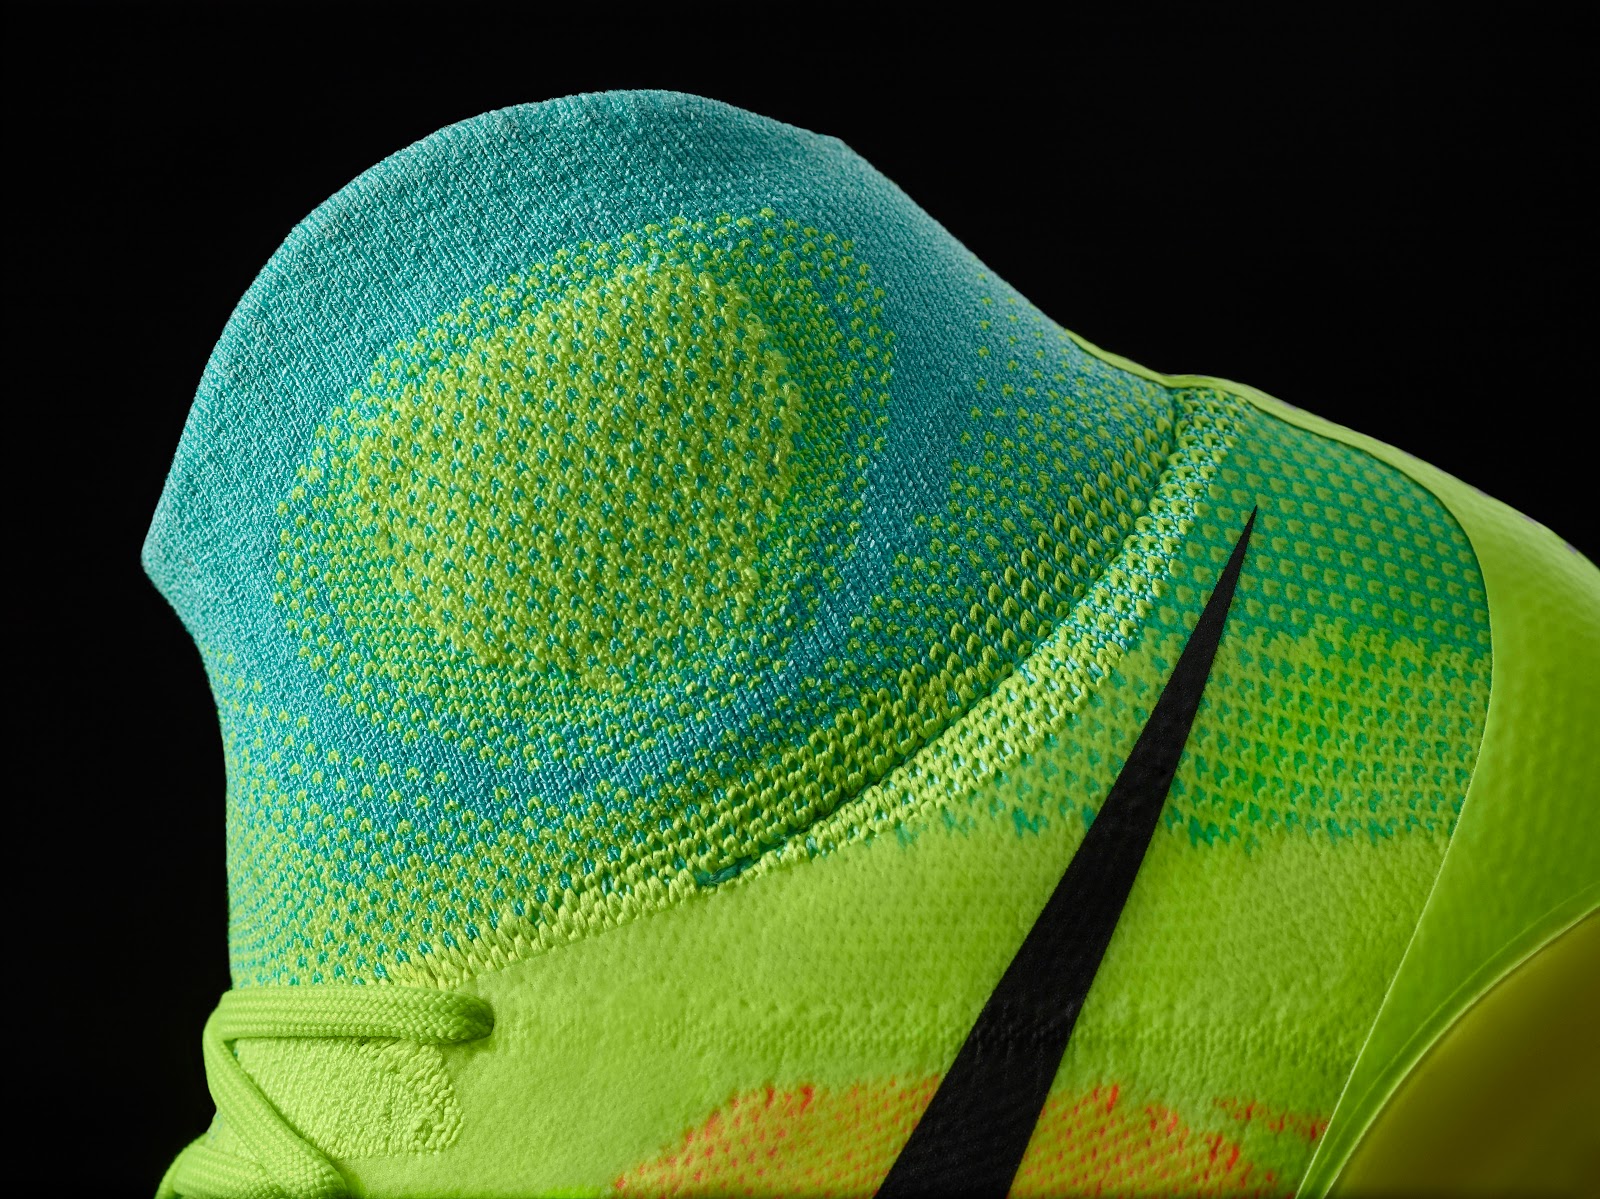 Nike Magista Obra II 3D knitted waterproof men's soccer